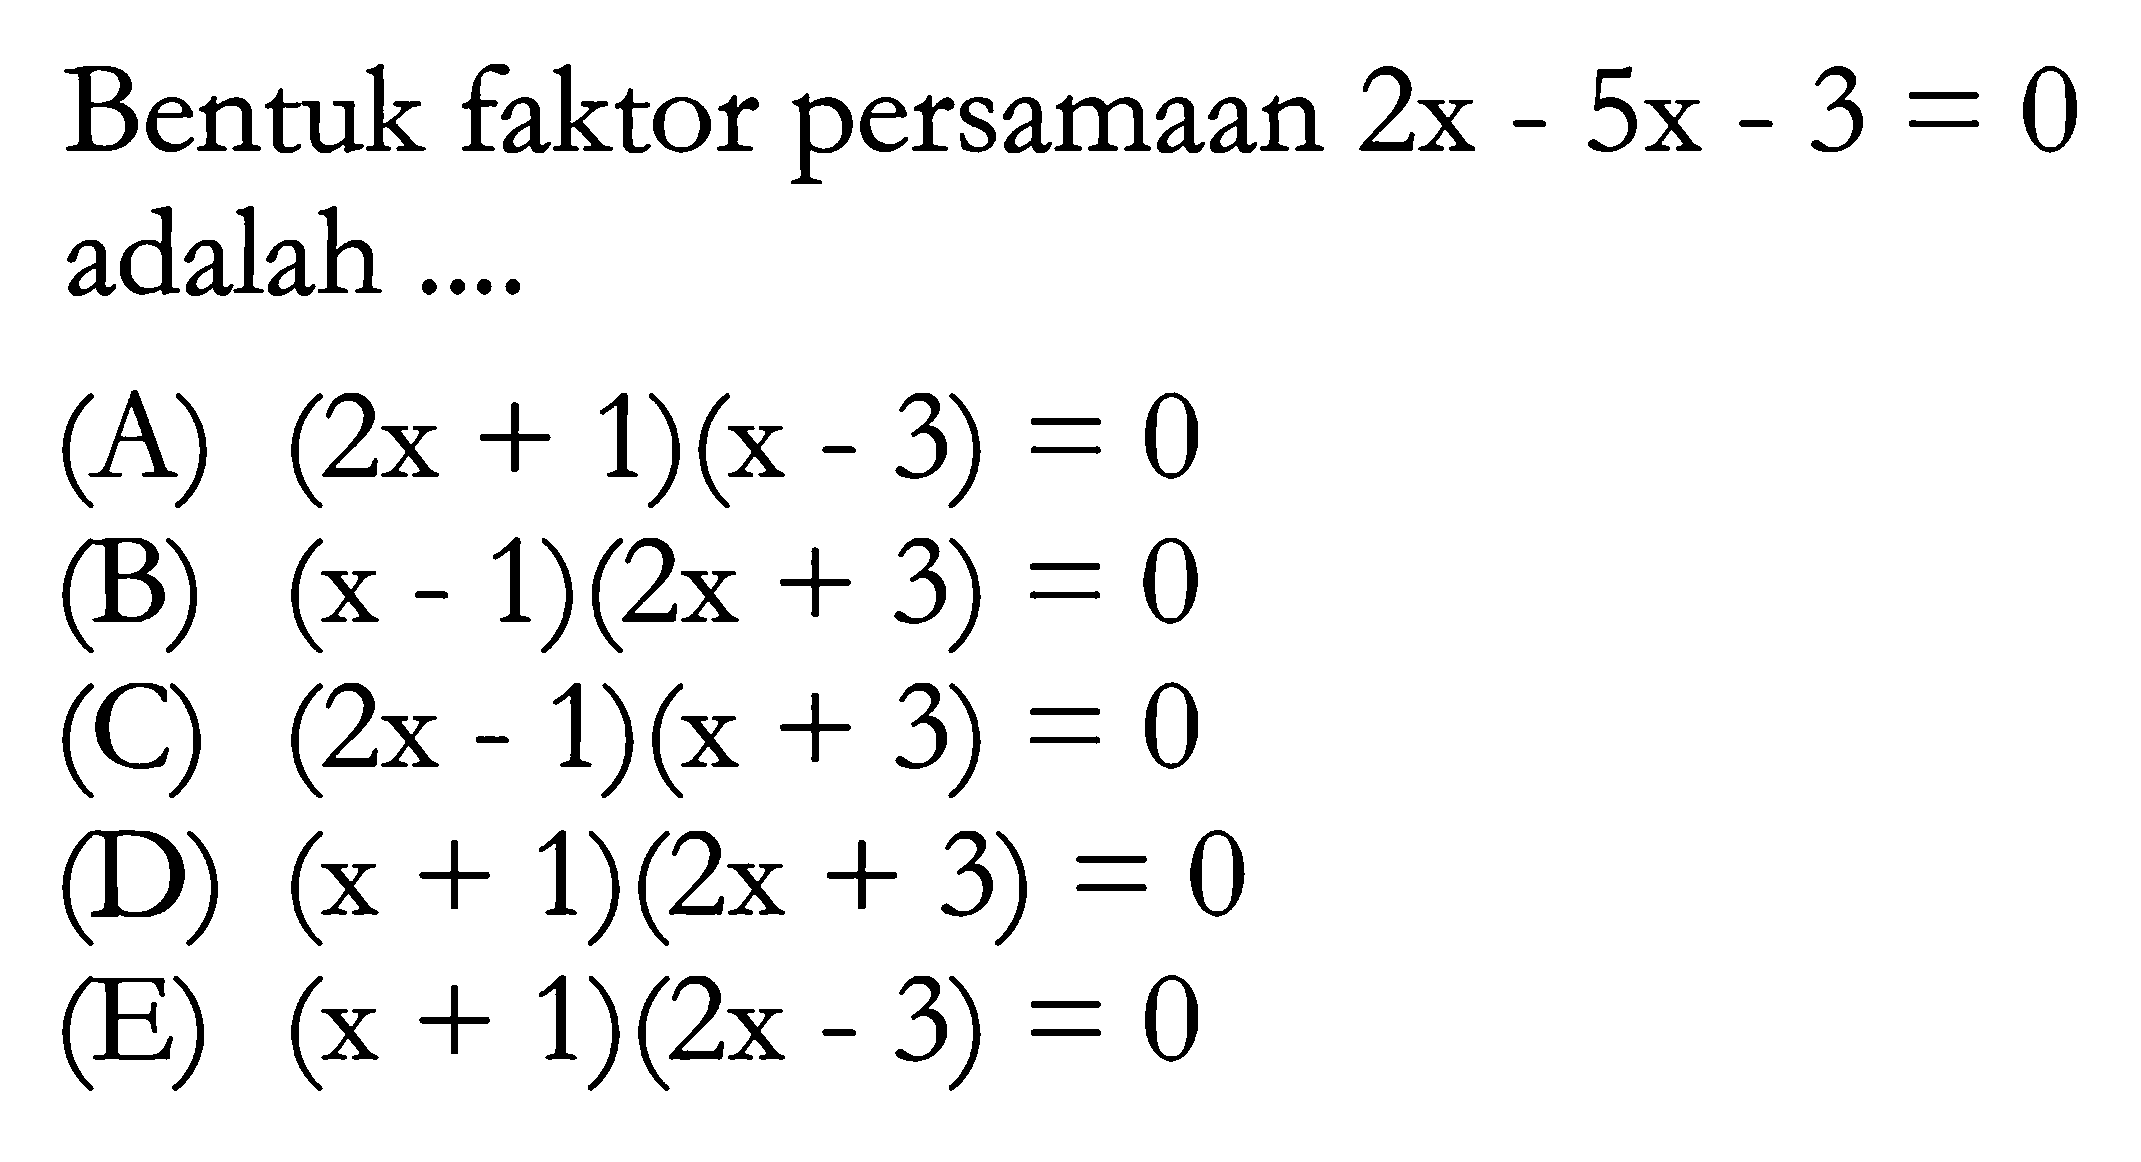 Bentuk faktor persamaan 2x - 5x - 3 = 0 adalah ...